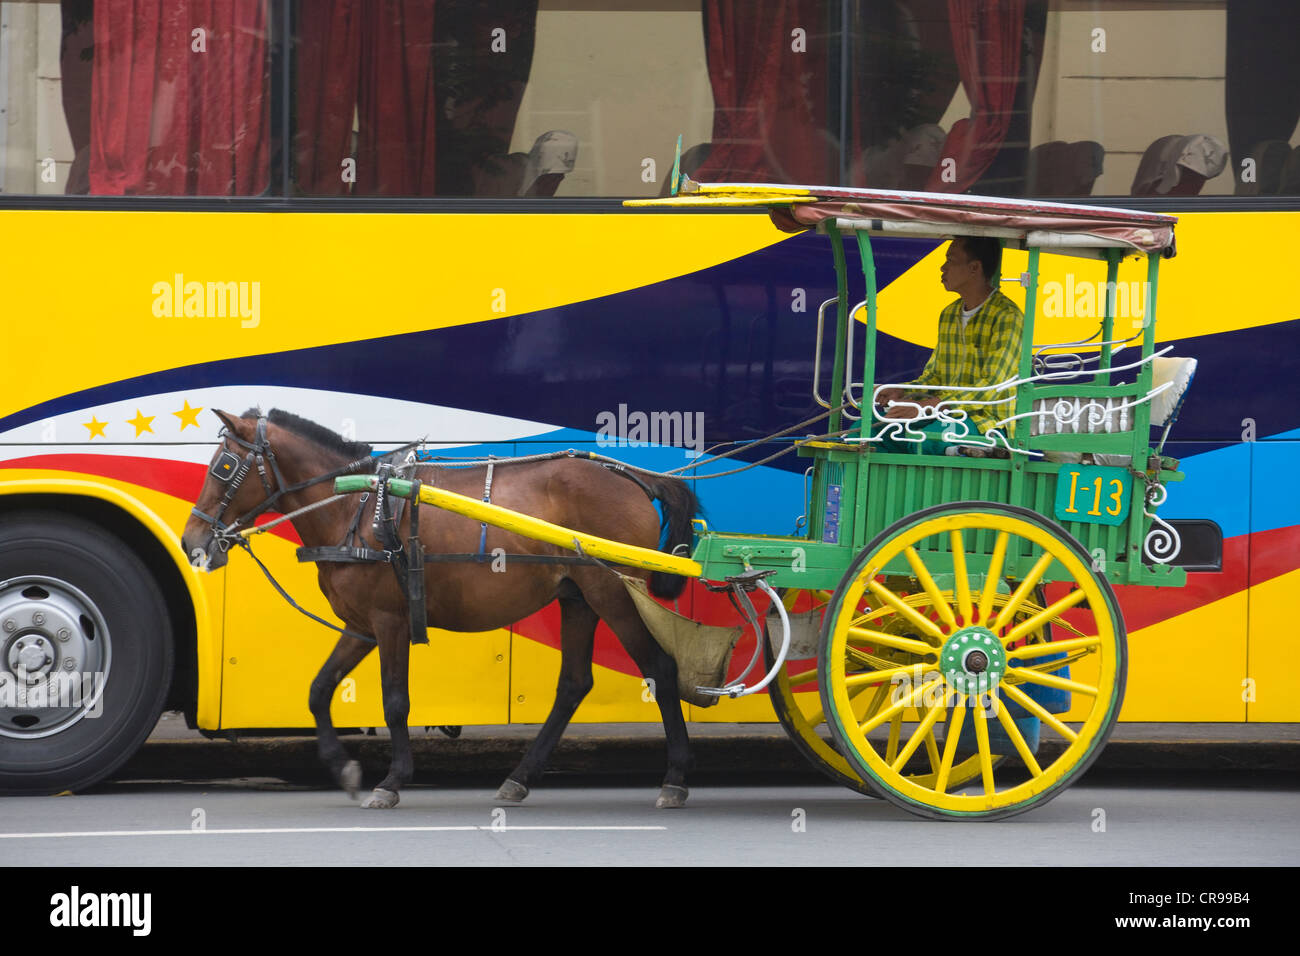 Panier cheval à pied par bus peintes de couleurs vives, Manille, Philippines Banque D'Images